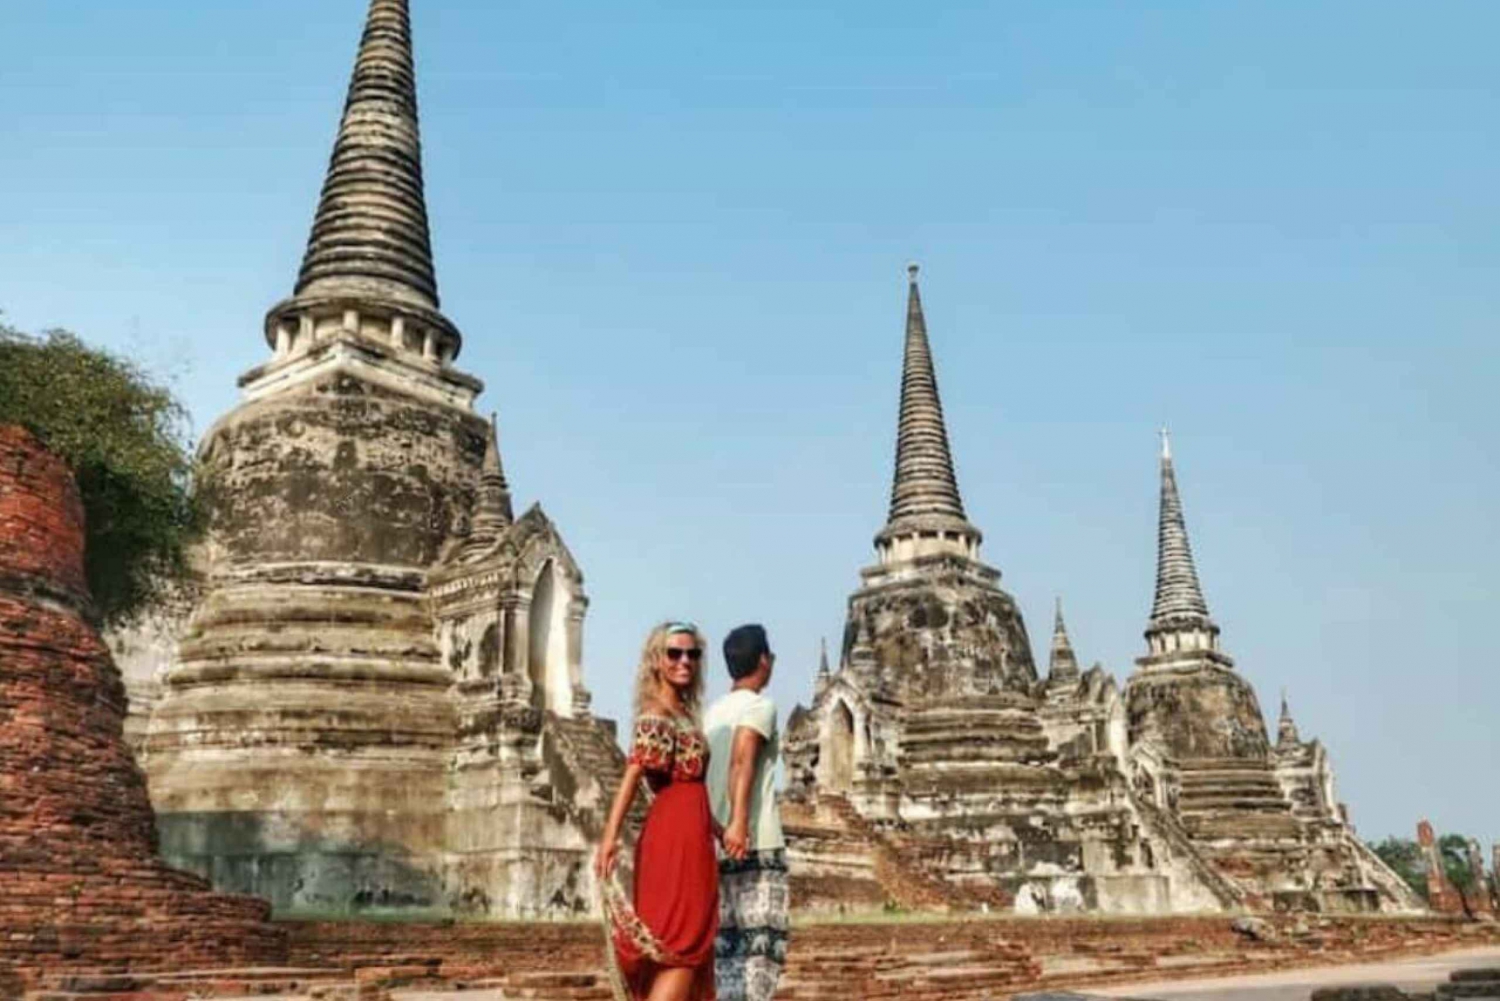 Bangkok Ayutthaya Ancient City Instagram-Tour